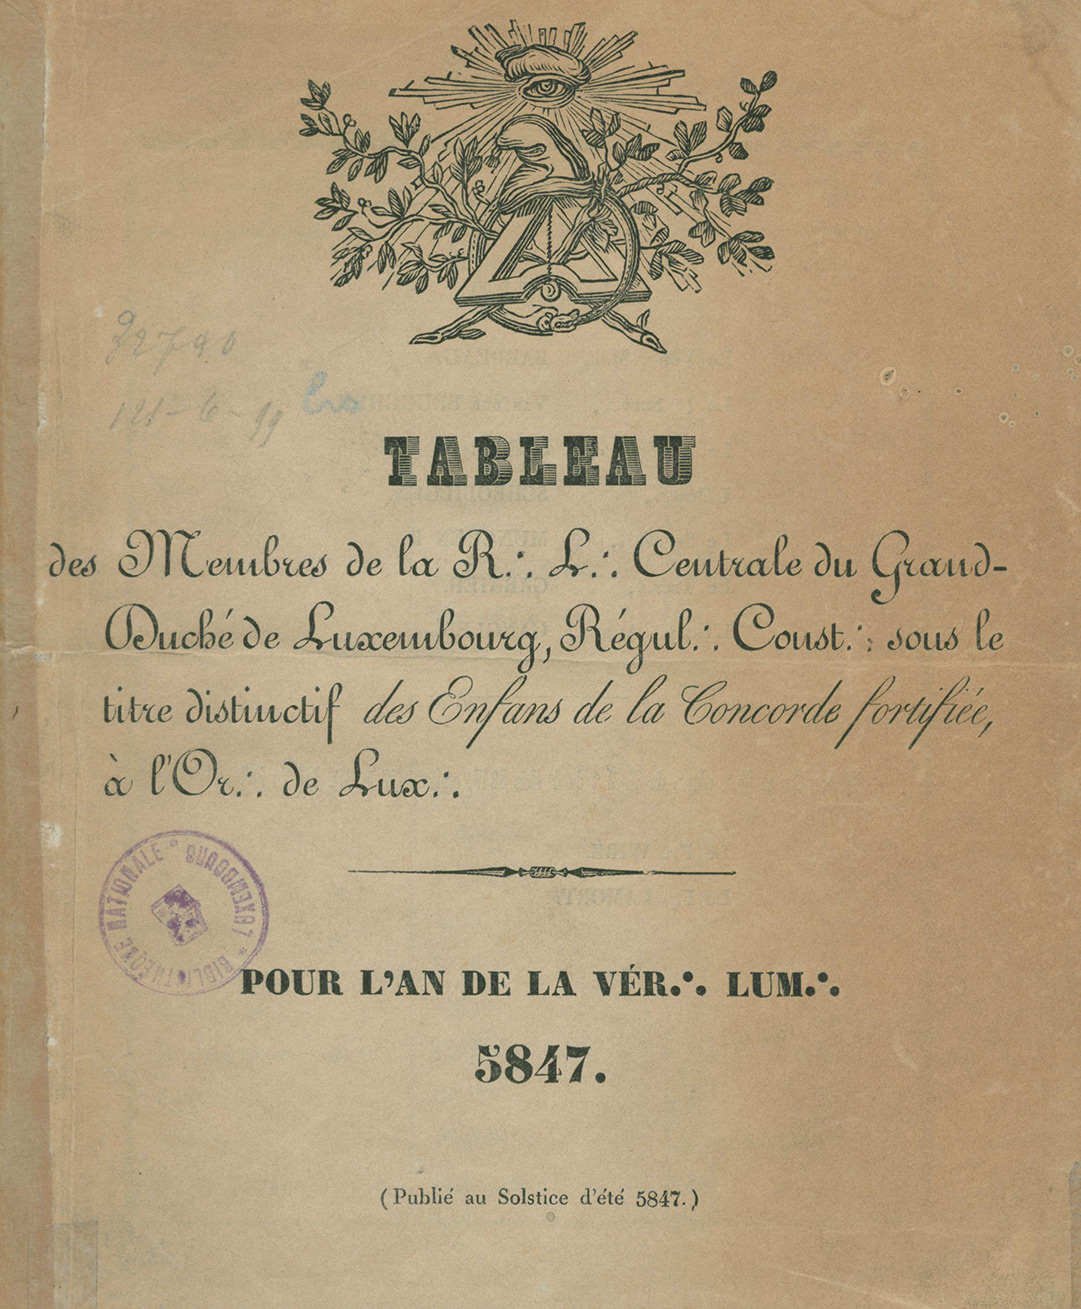 D'Memberlëscht vun der Fräimaurerloge Enfans de la Concorde fortifiée aus dem Joer 1847 (BnL Cote LA 26976)